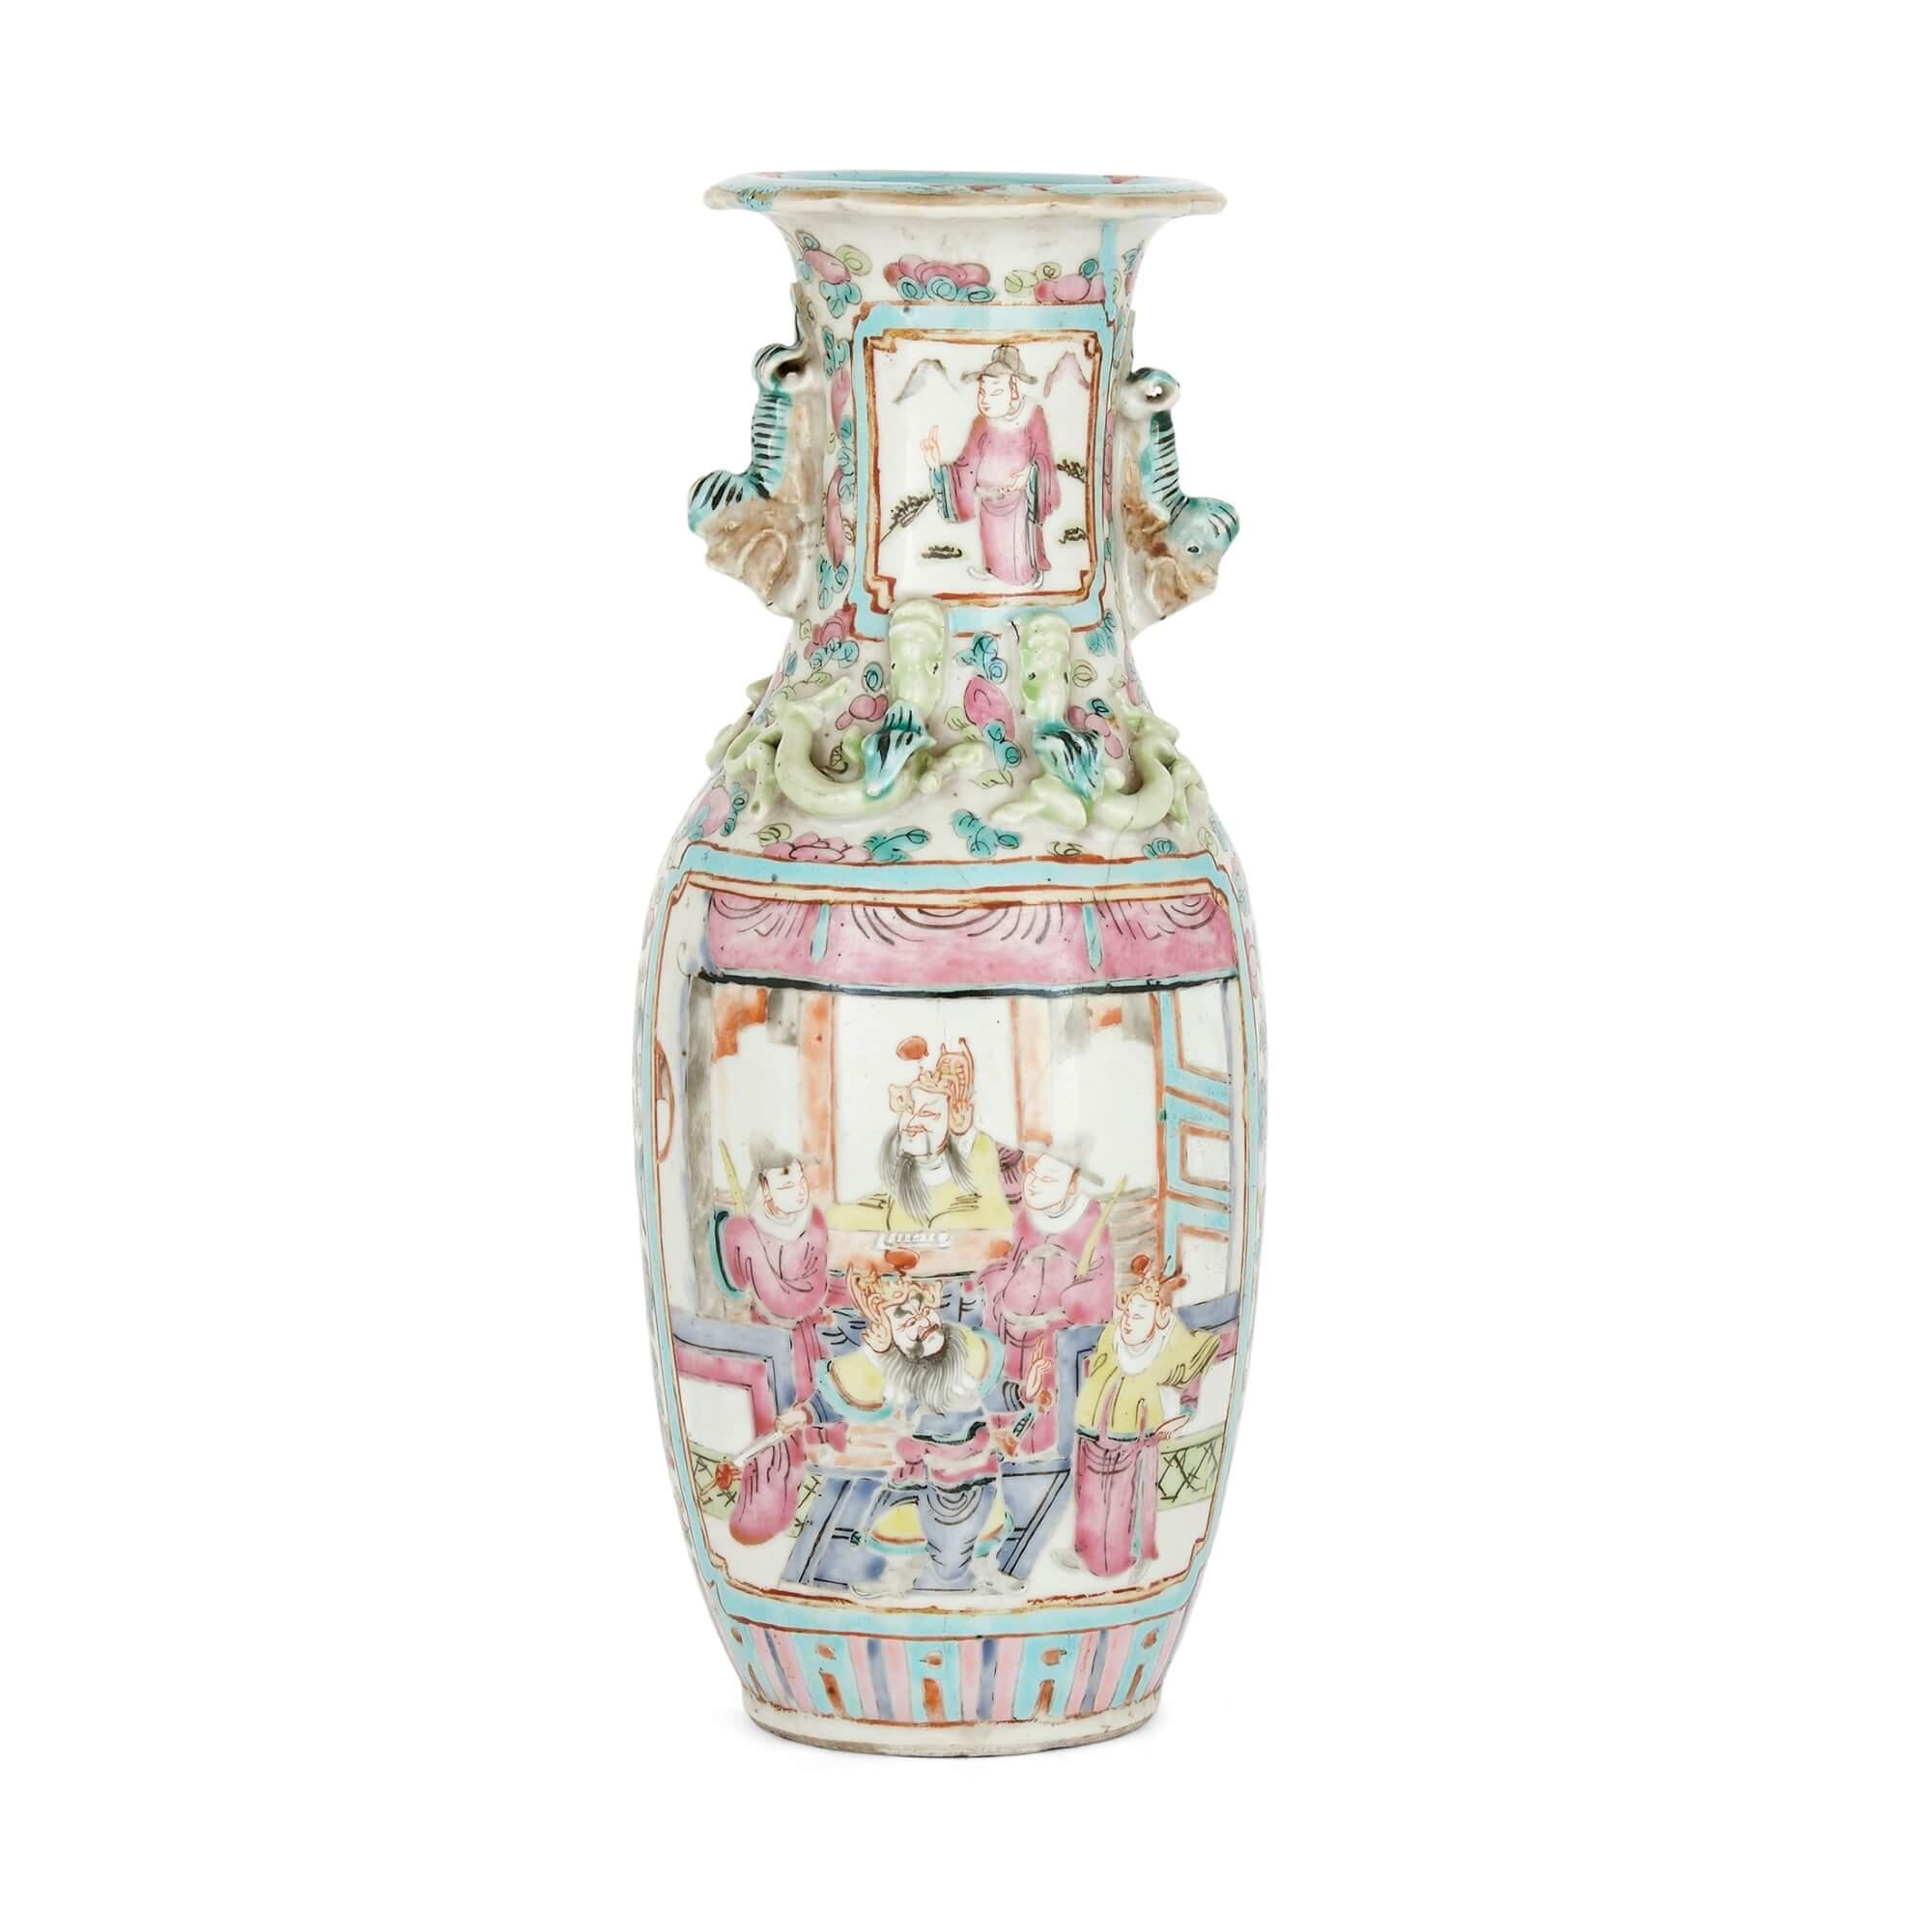 Vase ancien en porcelaine de Canton
Chinois, début du 20e siècle
Mesures : Hauteur 24cm, diamètre 10cm

Ce vase en porcelaine de Canton a un col cannelé et est abondamment décoré de motifs peints à la main. D'un côté, une scène d'intérieur